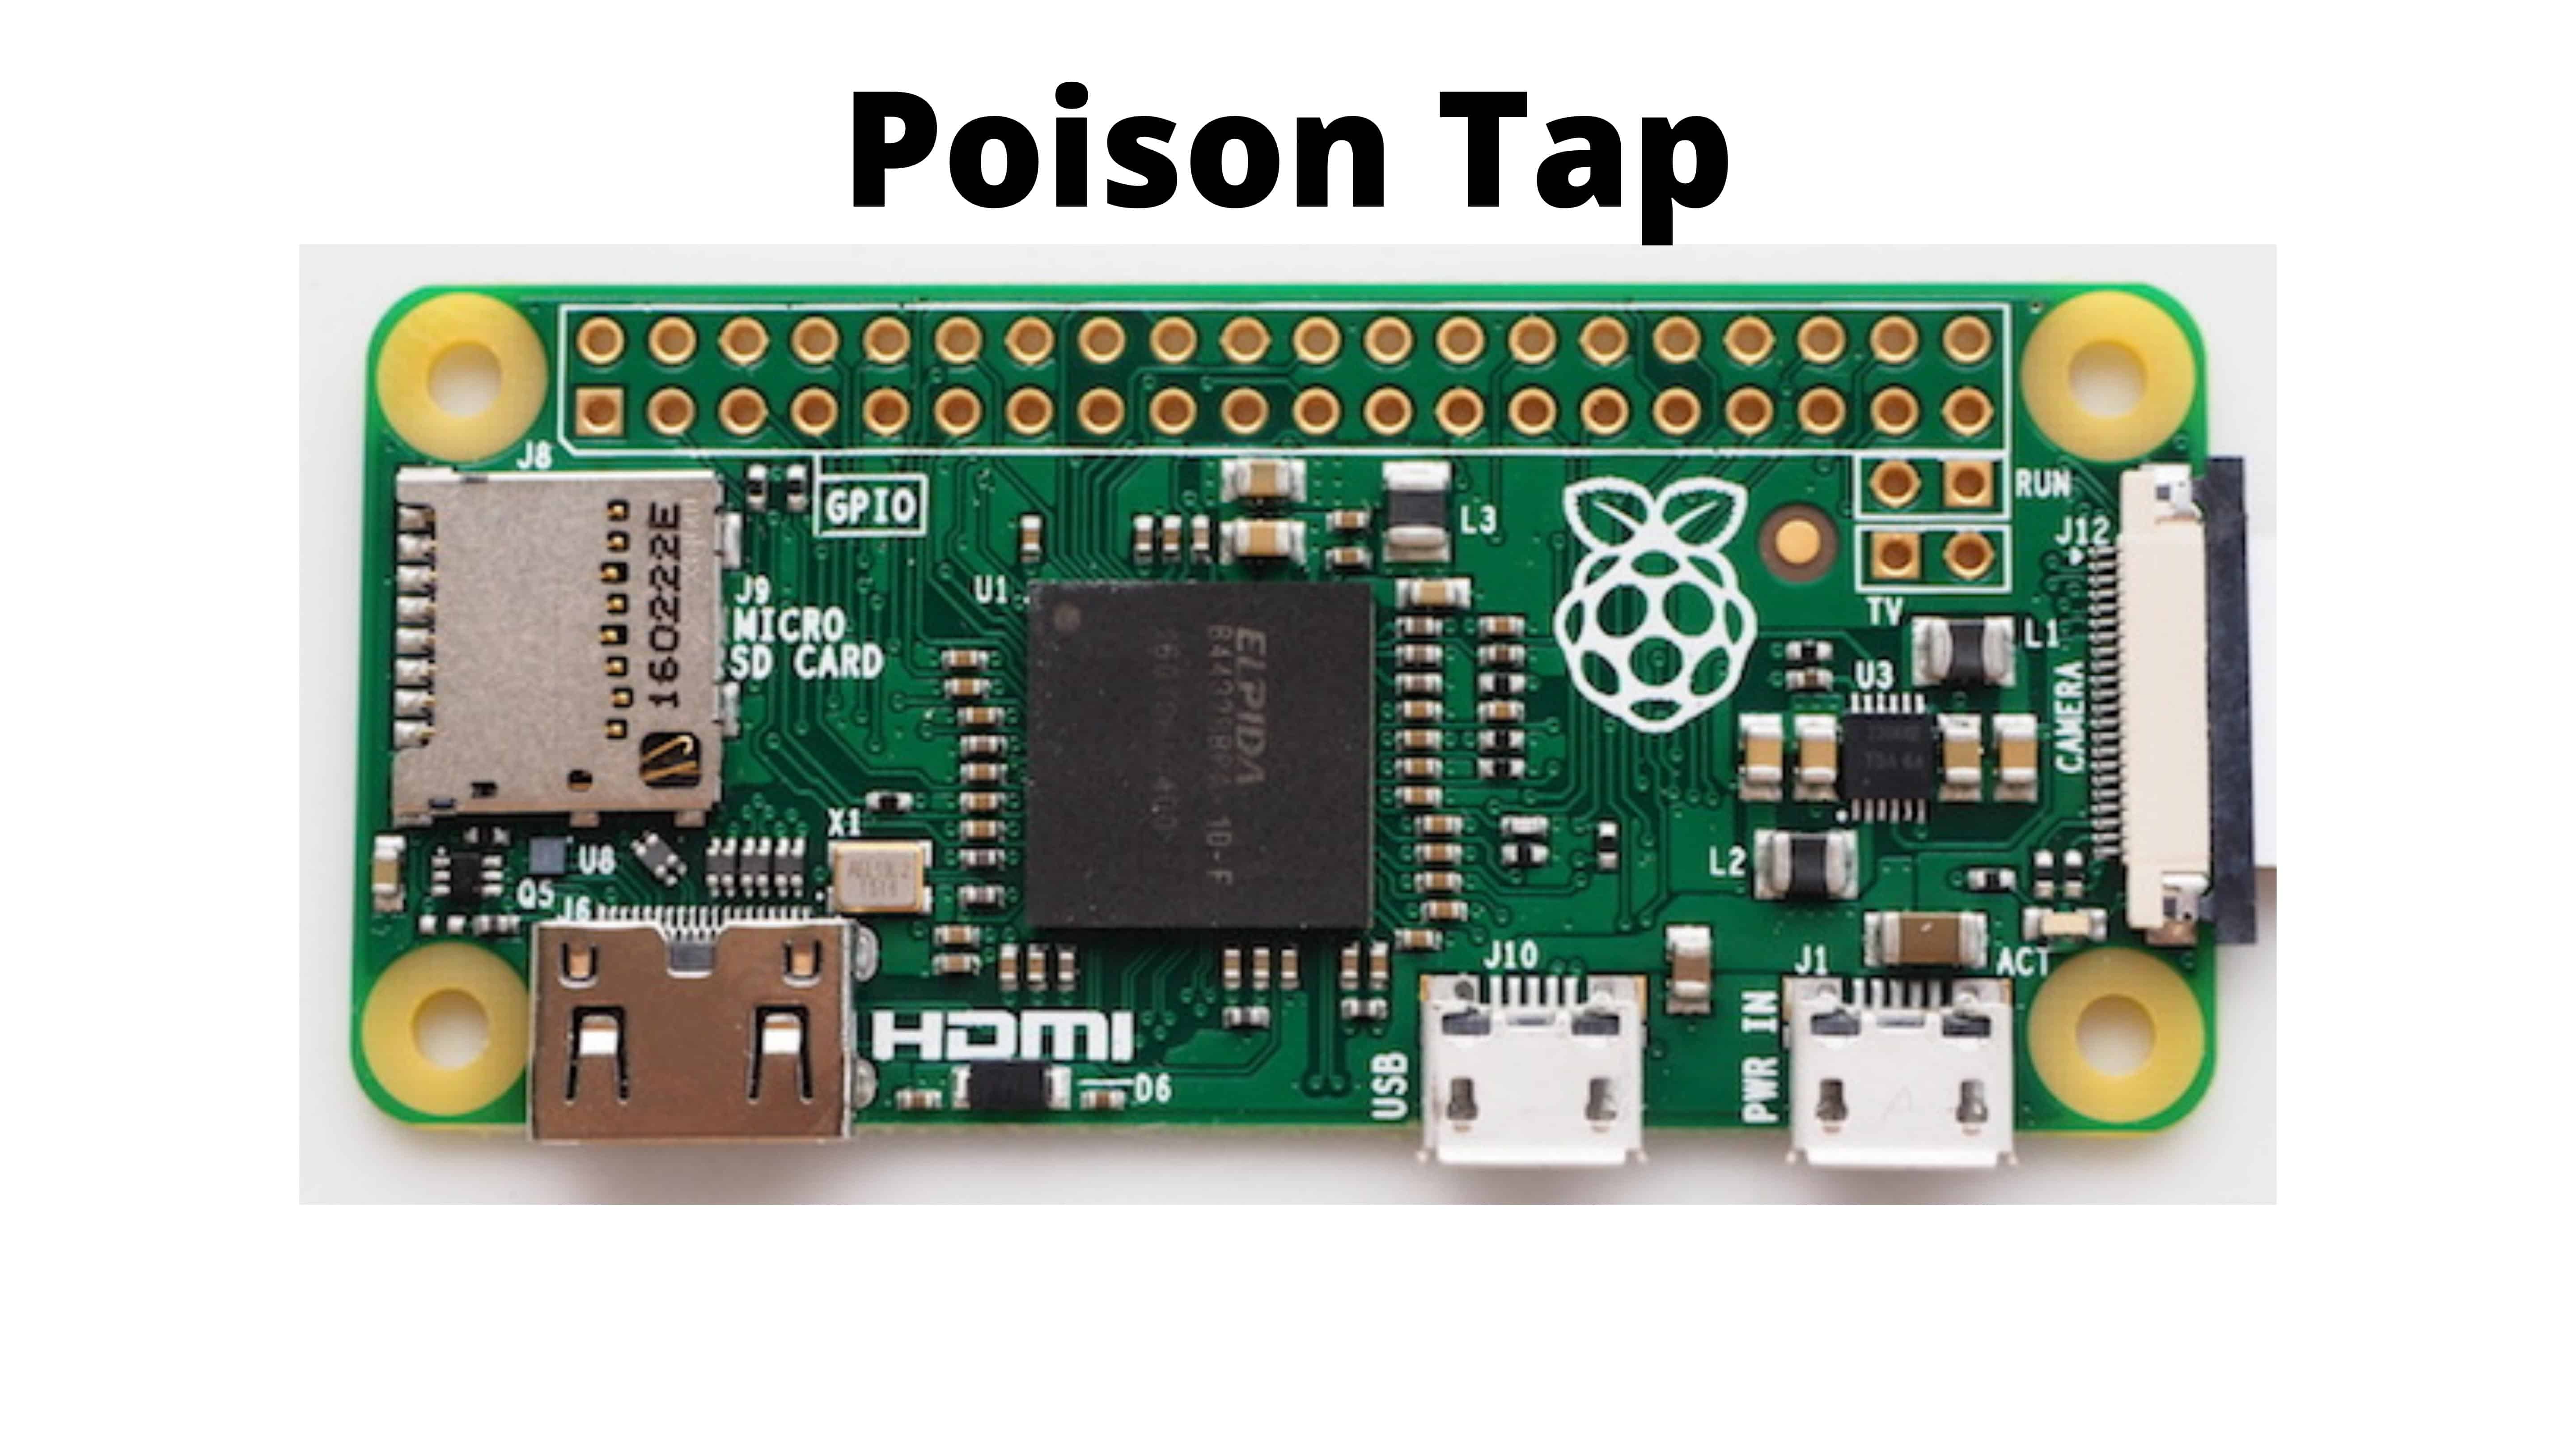 poison-tap-dispositivo-e-capaz-de-sequestrar-um-computador-em-30-segundos